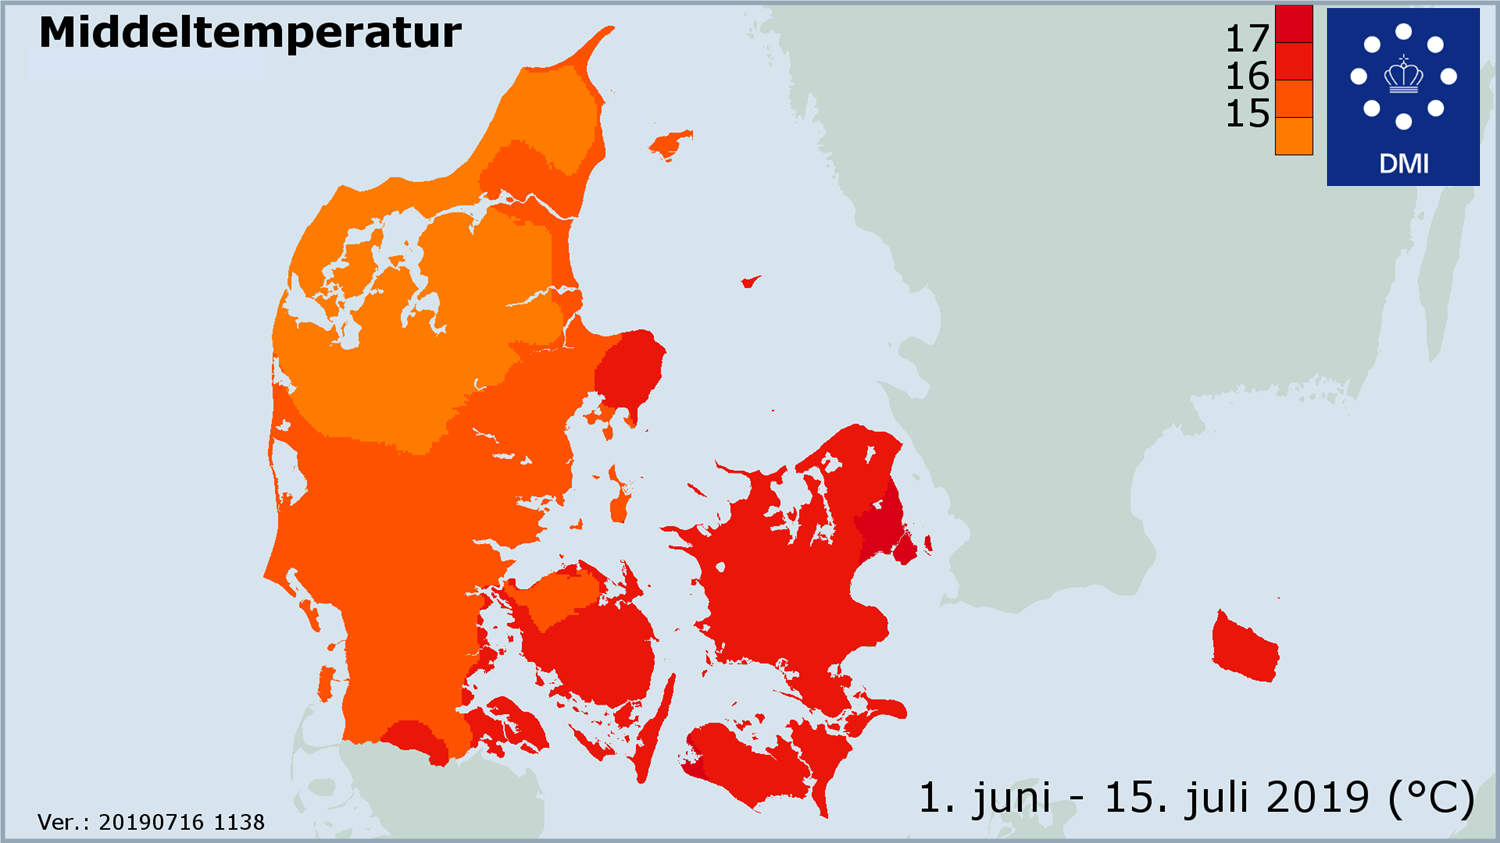 Kort over Danmarks middeltemperatur i første havldel af Juni